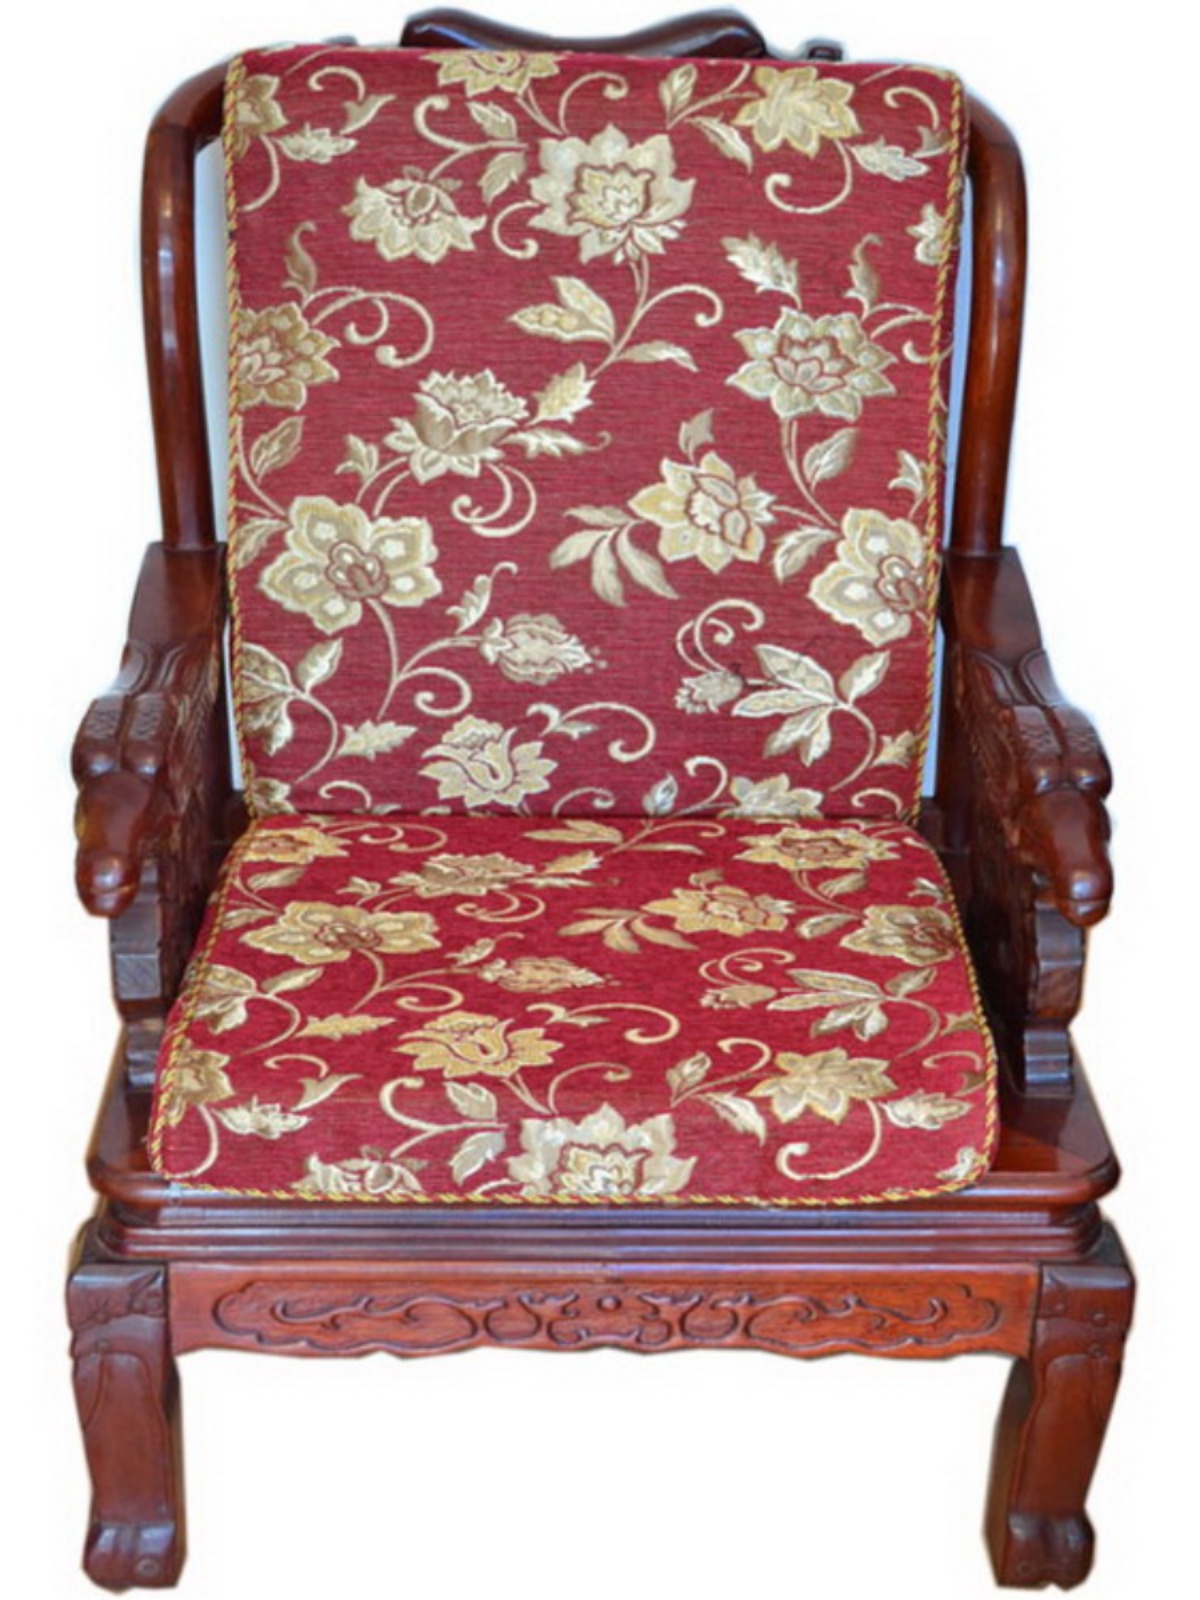 歐式風格紅木沙發墊四季通用加厚防滑適合組合沙發